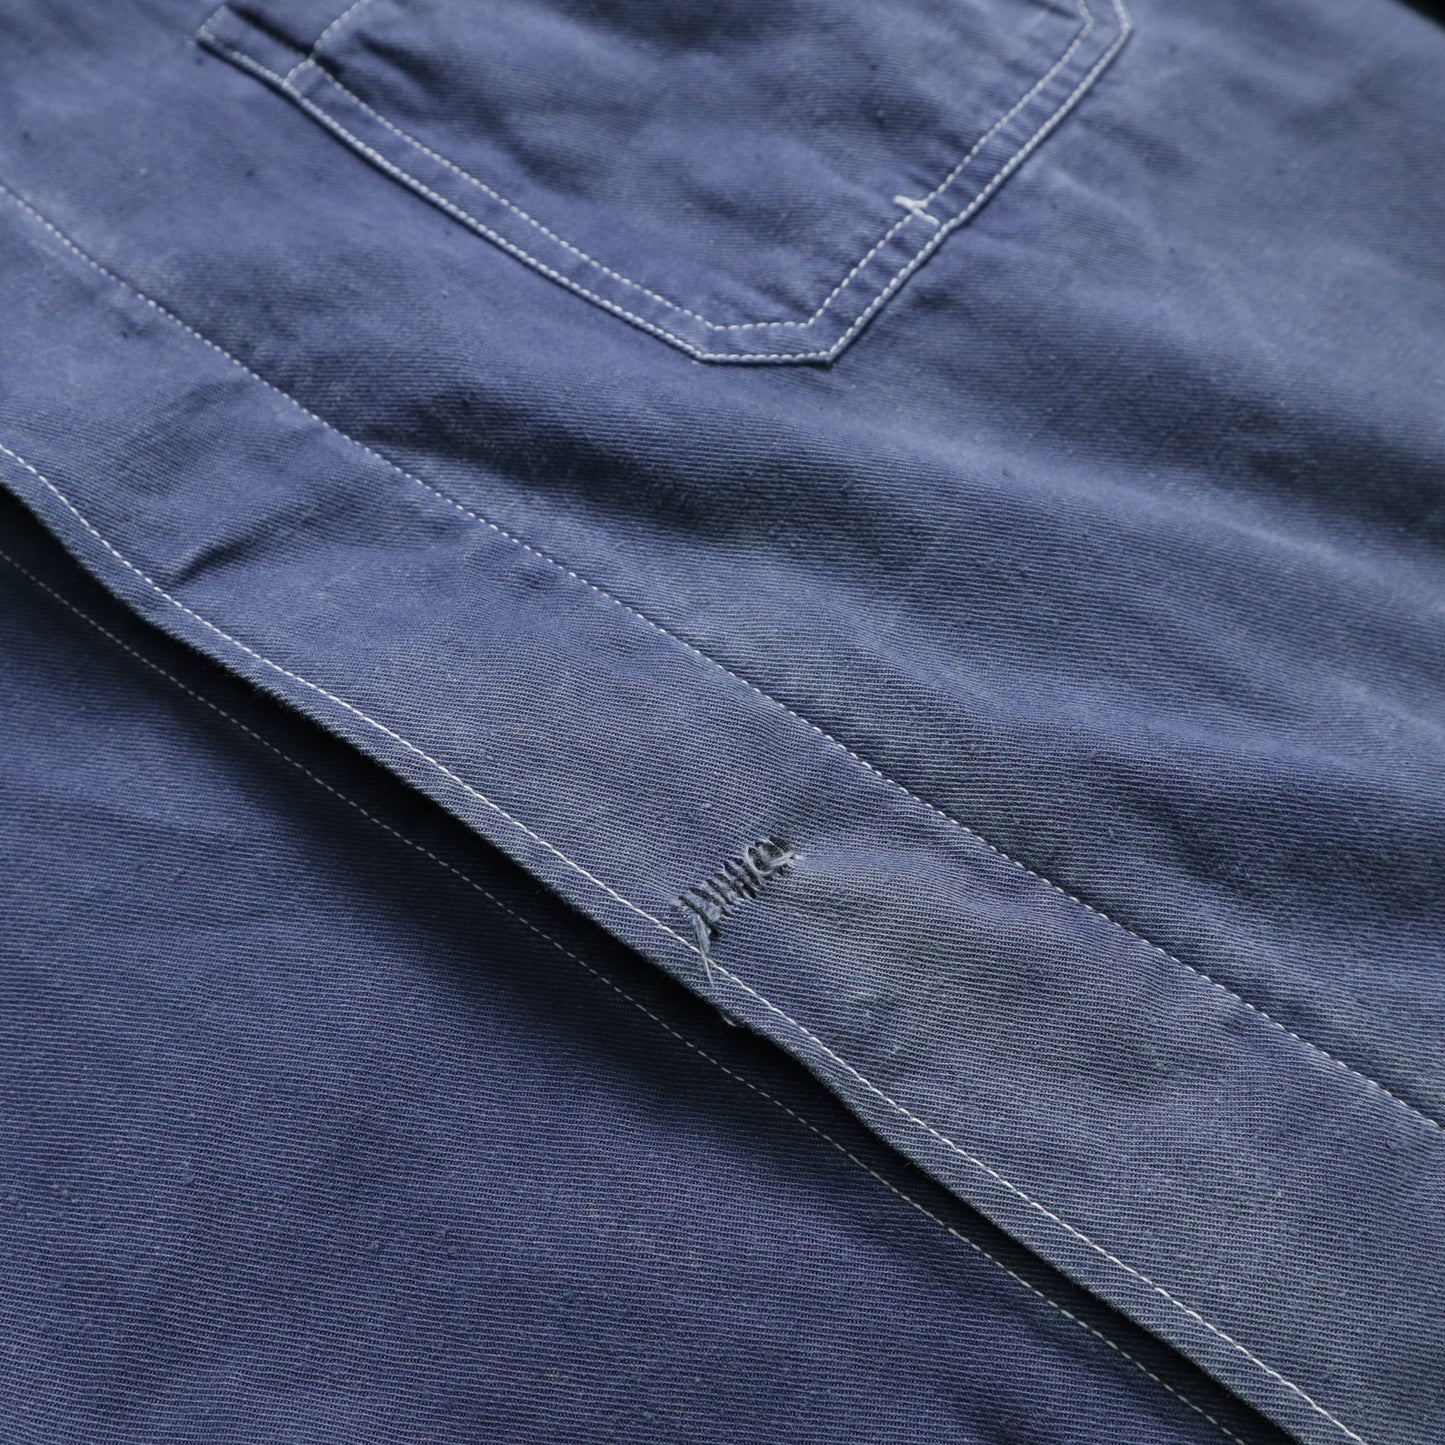 1980s Lotus 藍色法國工裝外套